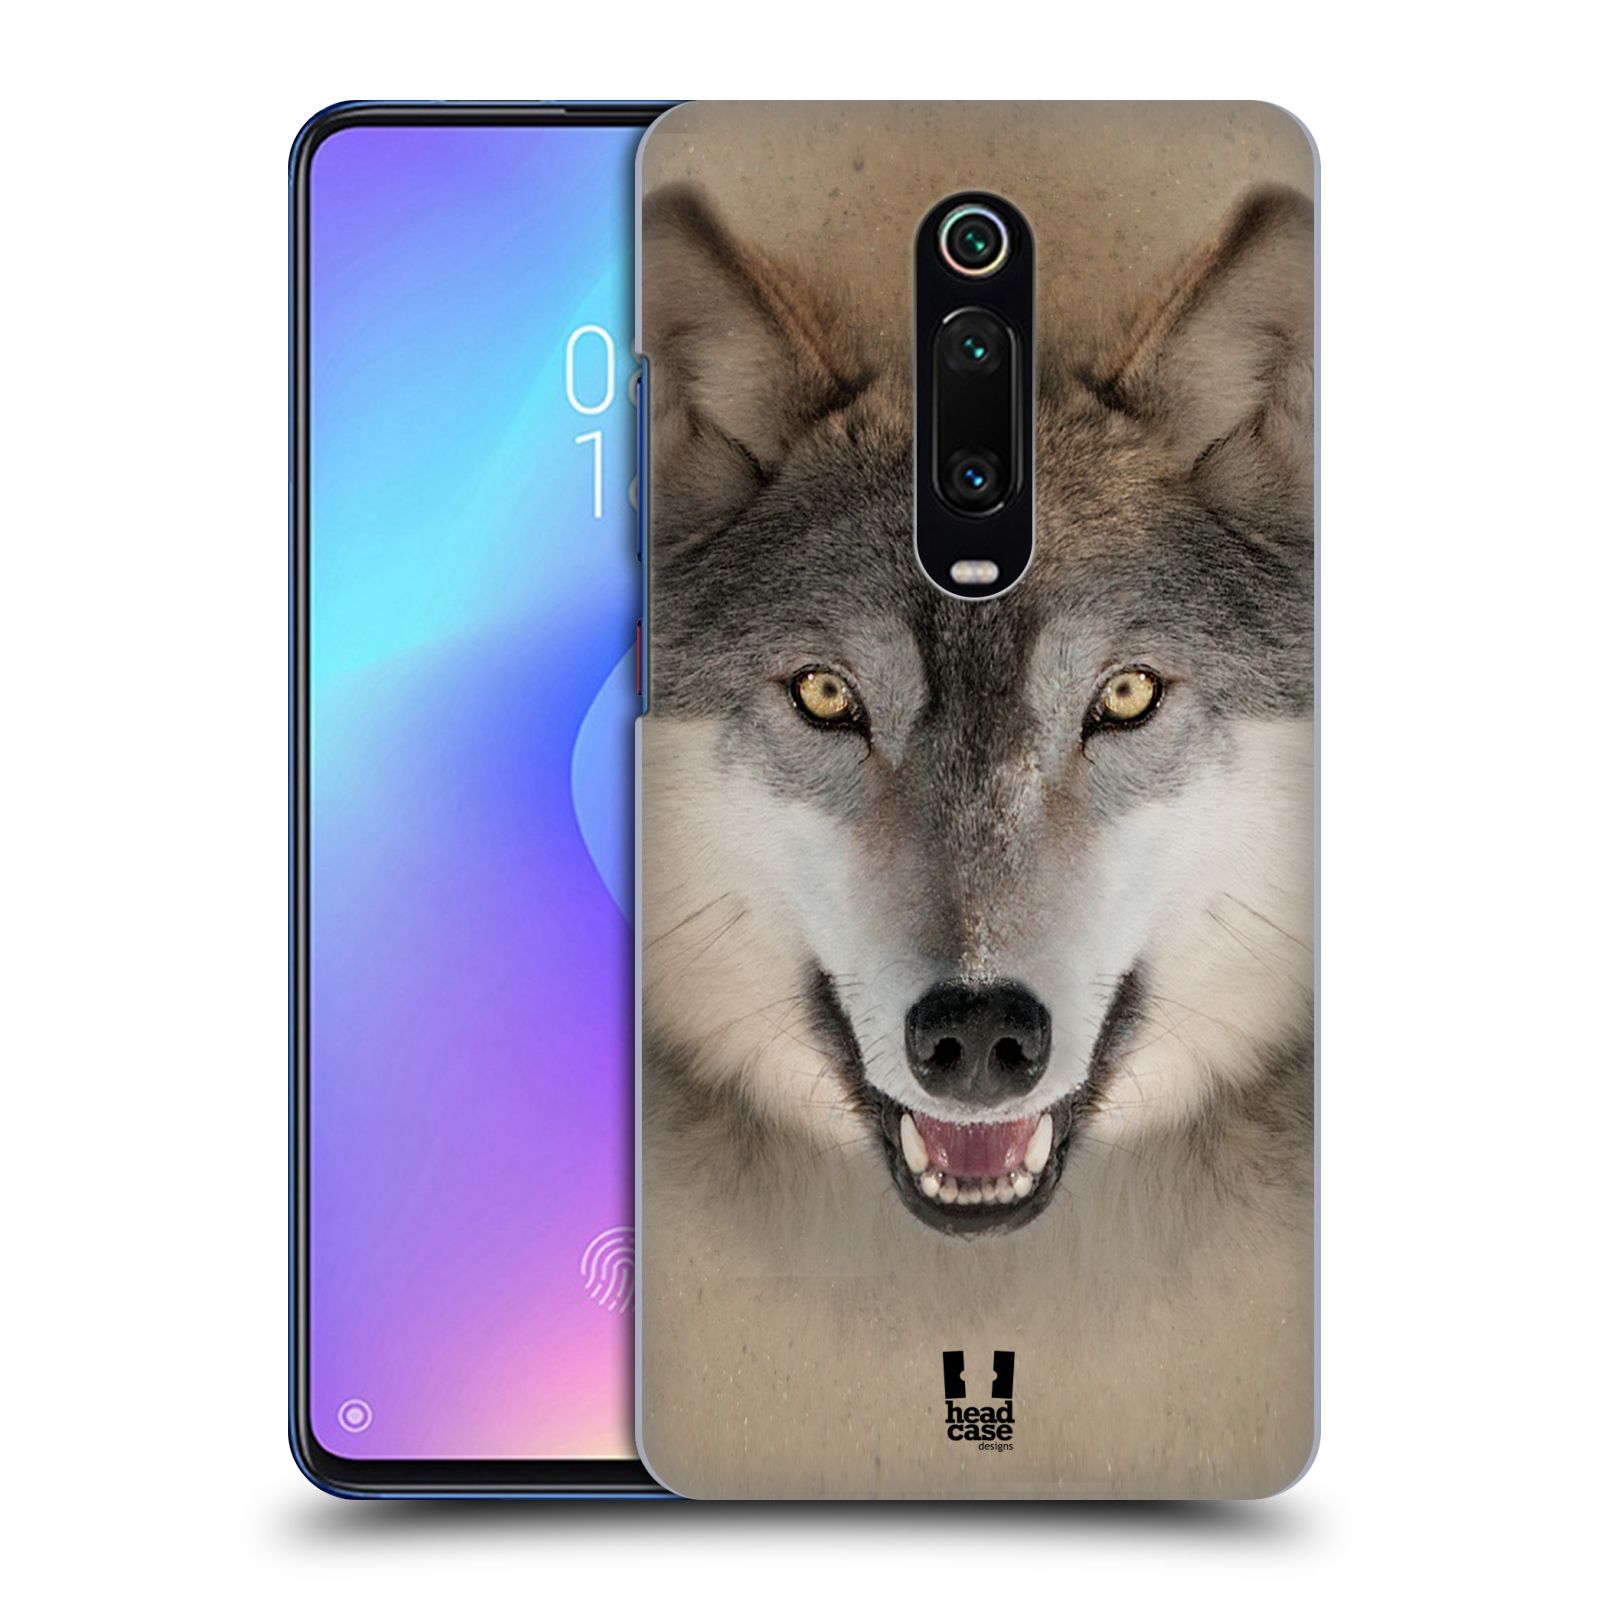 Pouzdro na mobil Xiaomi Mi 9T PRO - HEAD CASE - vzor Zvířecí tváře 2 vlk šedý